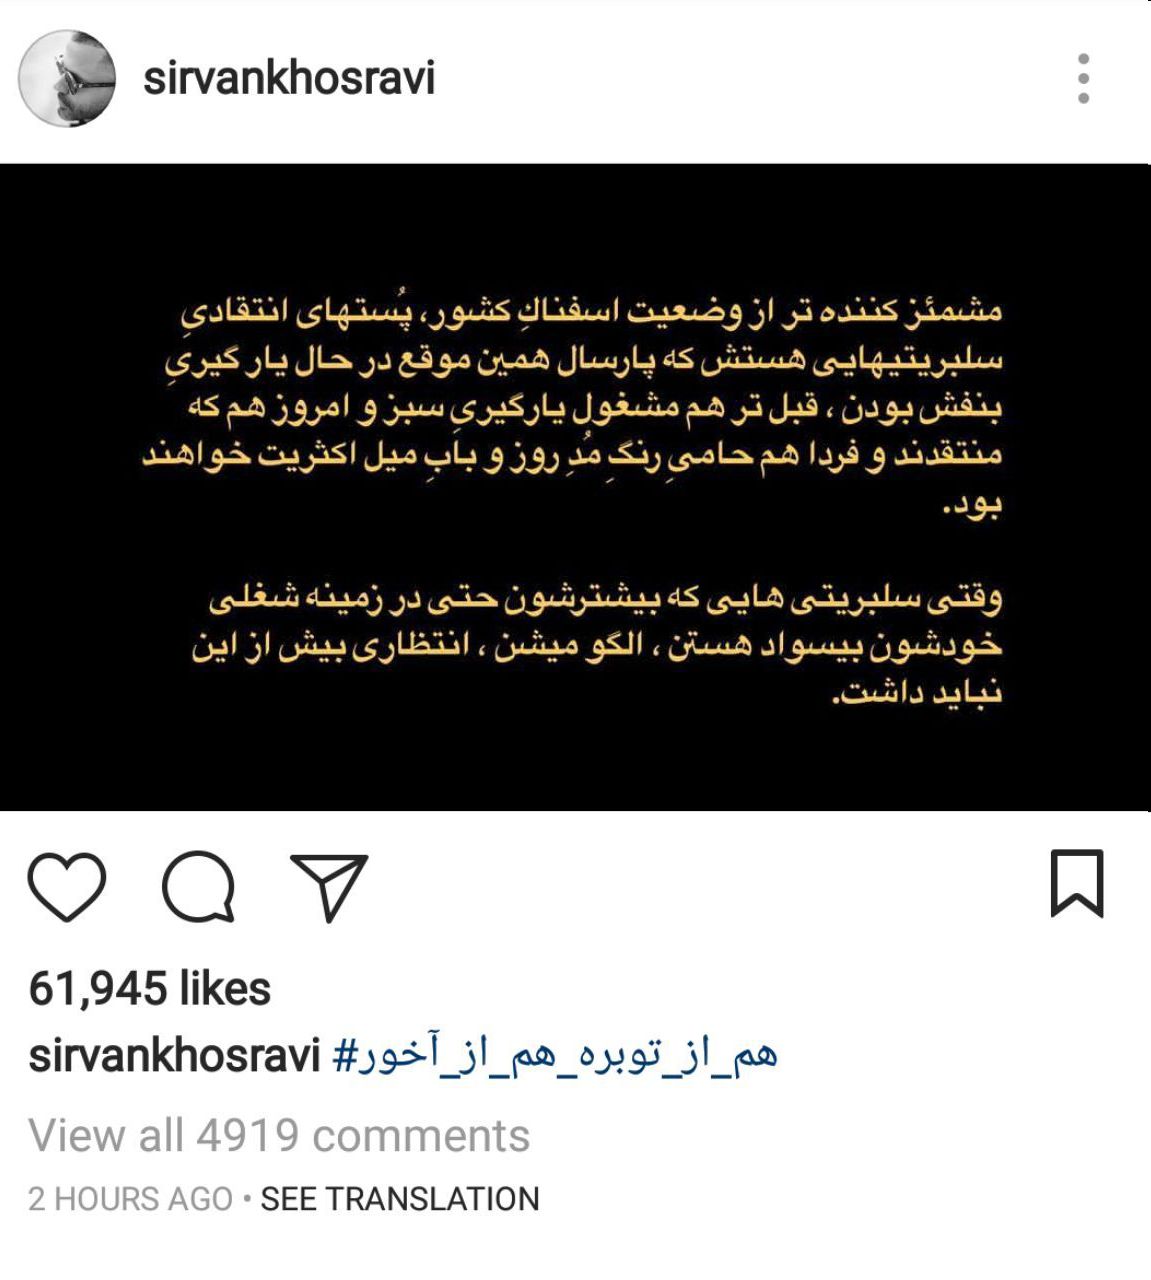 پست اینستاگرامی سیروان خسروی خطاب به سلبریتی های بی سواد